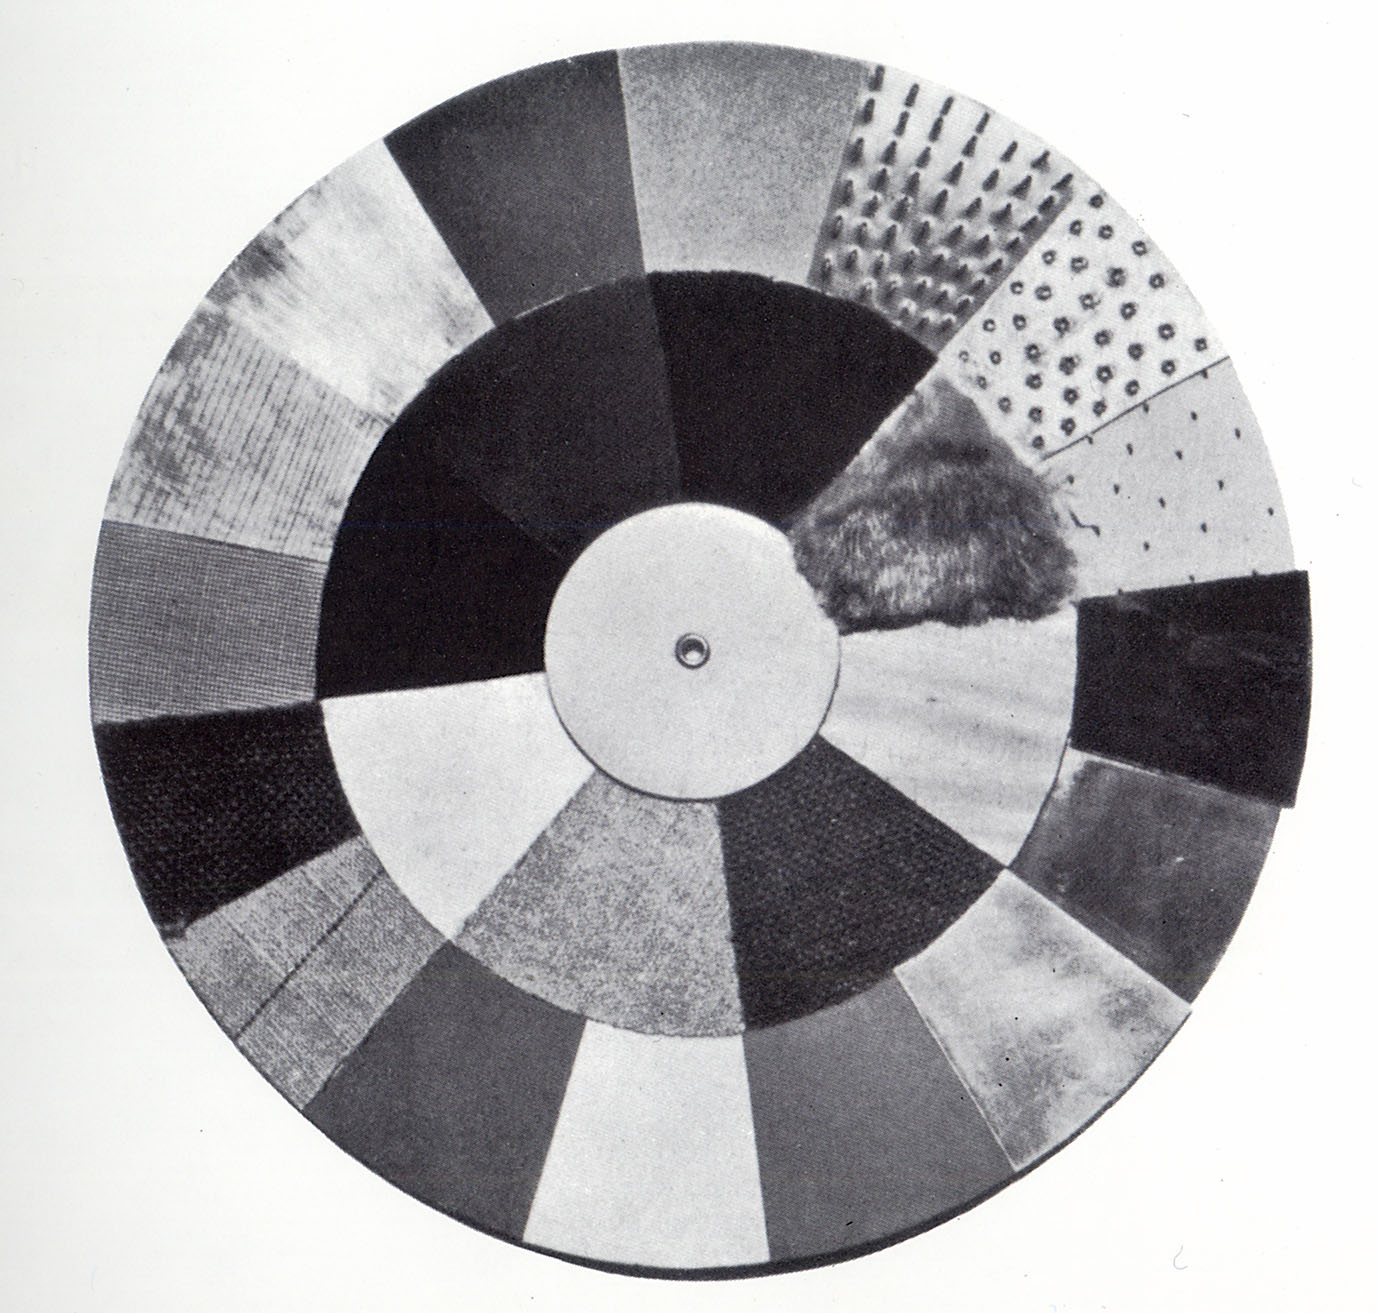 Illustration 1: Bauhaus tactile board